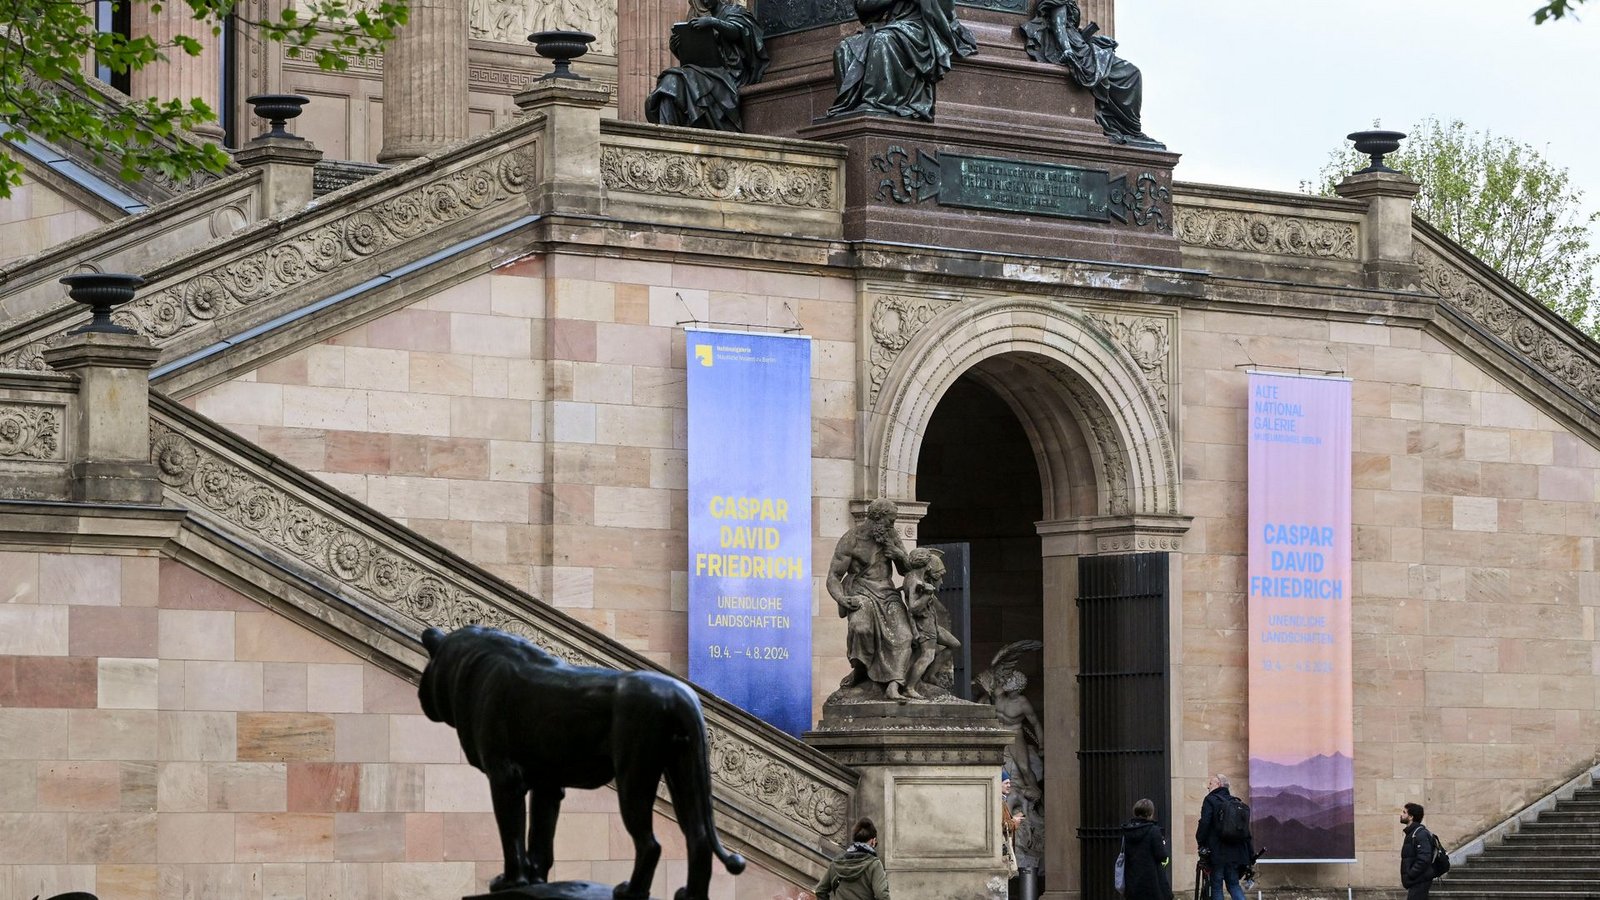 In der Alten Nationalgalerie in Berlin geht es um Caspar David Friedrich und die Natur.Foto: Jens Kalaene/dpa